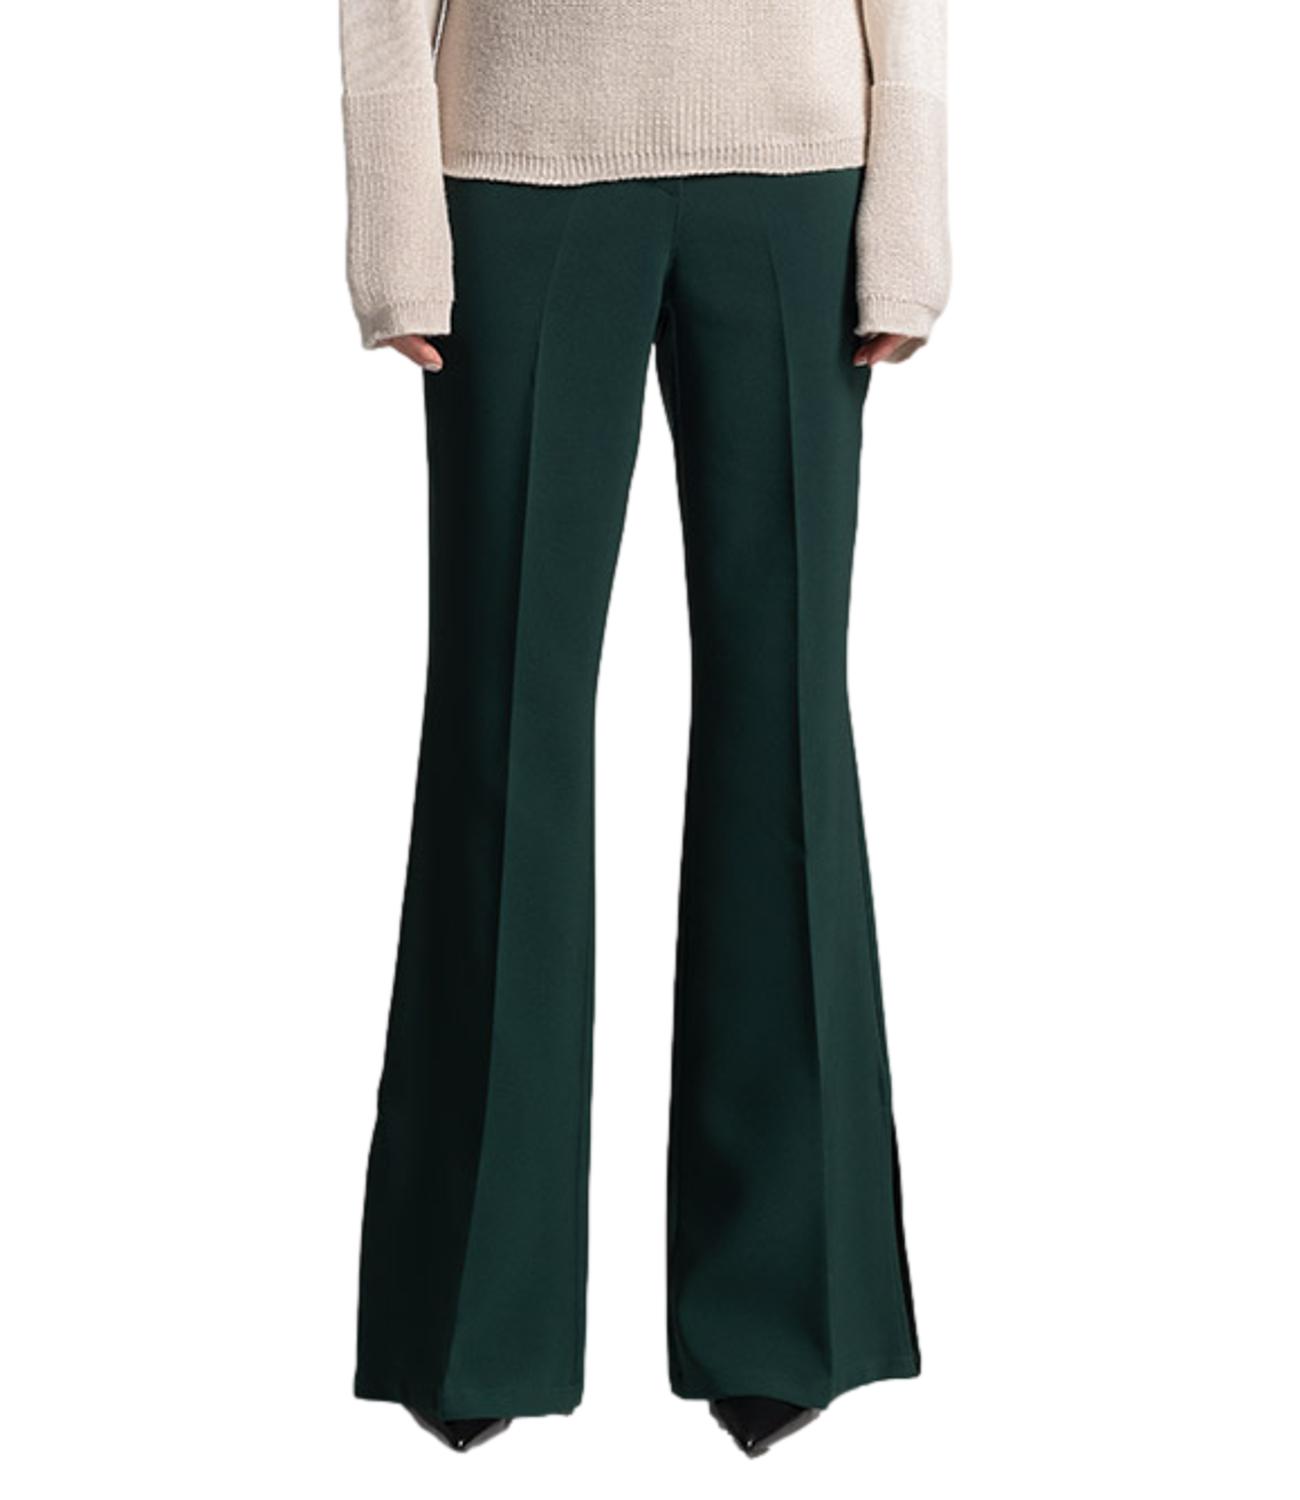 Women's green slit trousers